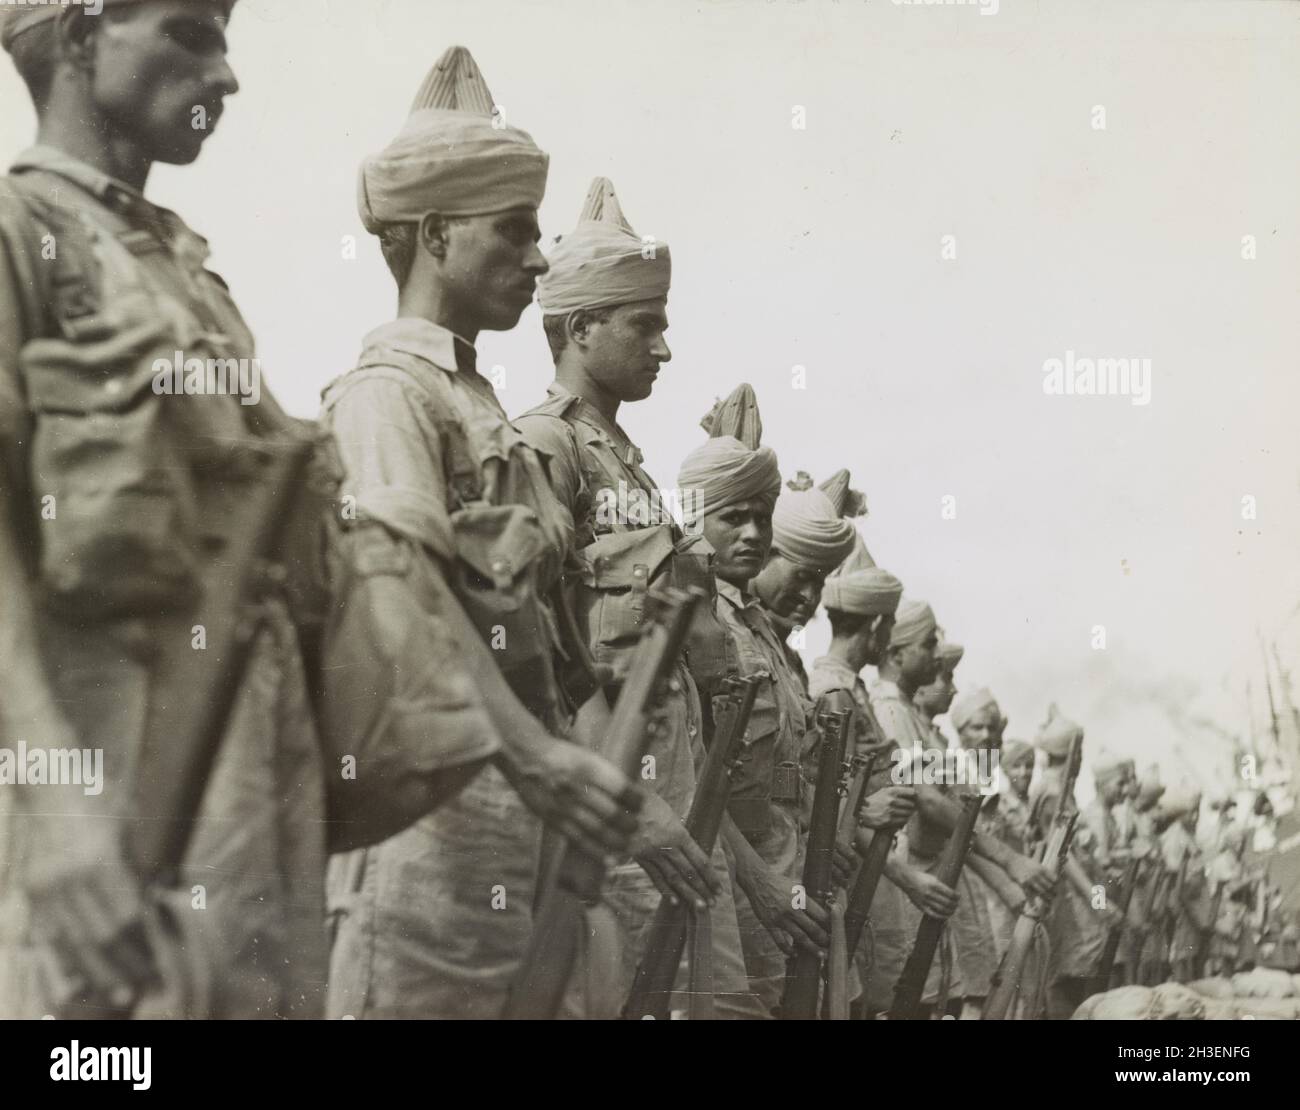 Une photo vintage vers 1941 des soldats de l'armée indienne en parade avant l'invasion japonaise de la Malaisie et la chute de Singapour Banque D'Images